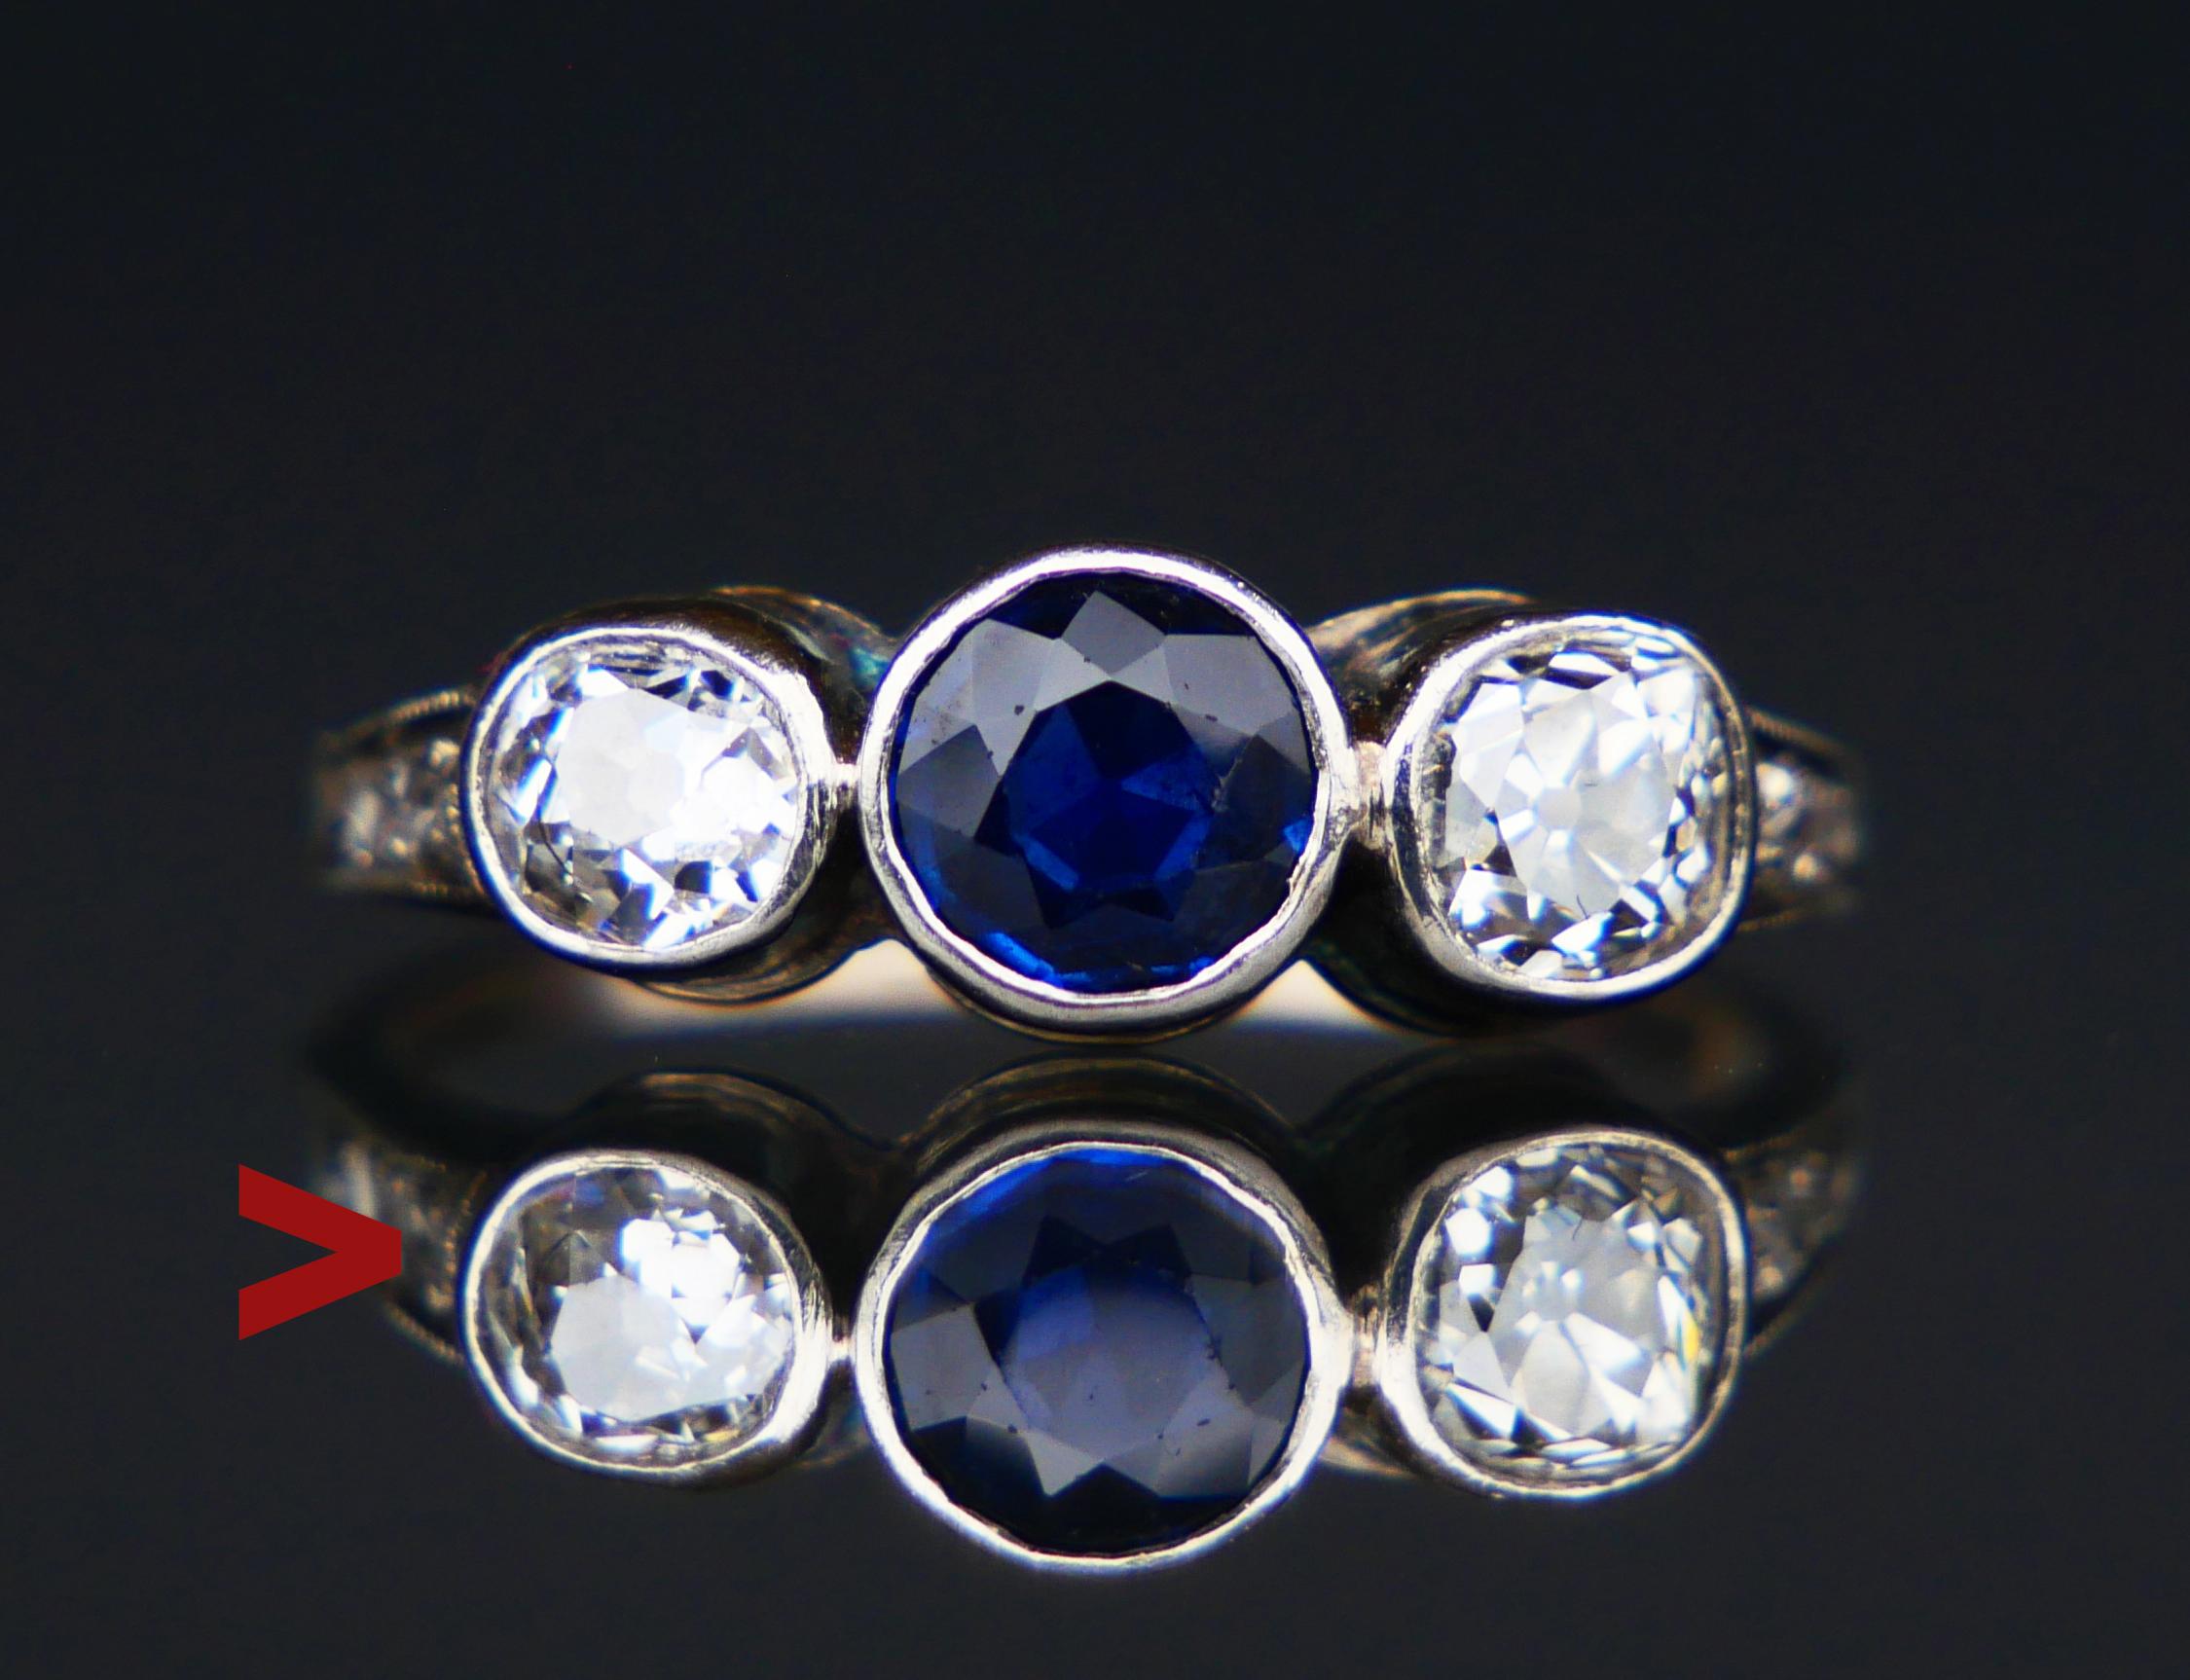 Magnifique bague en saphir et diamants fabriquée vers les années 1930-1950.
Non poinçonné, métal testé en or blanc massif 18K.

Couronne : 15,5 mm x 5,8 mm x 3,05 mm de profondeur.
Saphir naturel ancien taillé en diamant de couleur bleue d'intensité